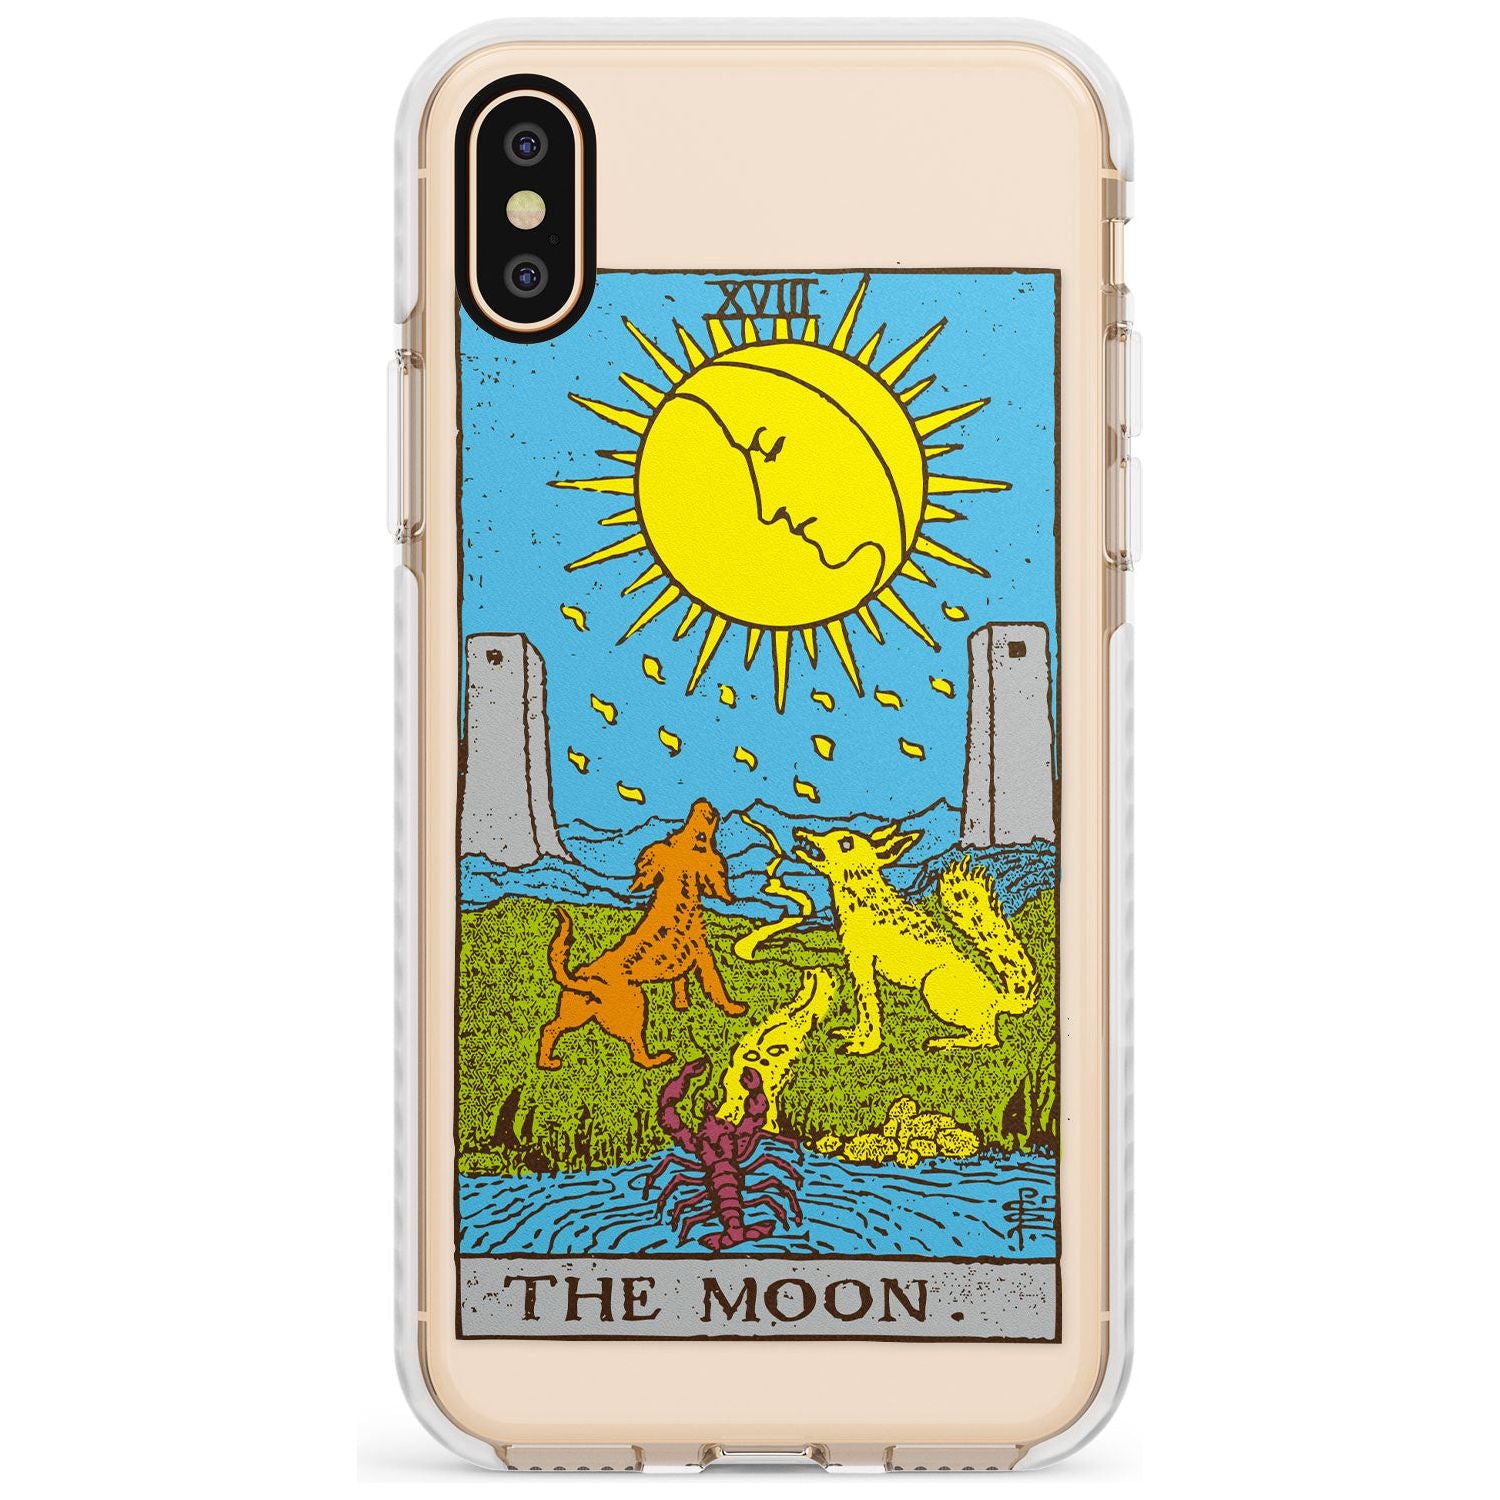 The Moon Tarot Card - Colour Slim TPU Phone Case Warehouse X XS Max XR